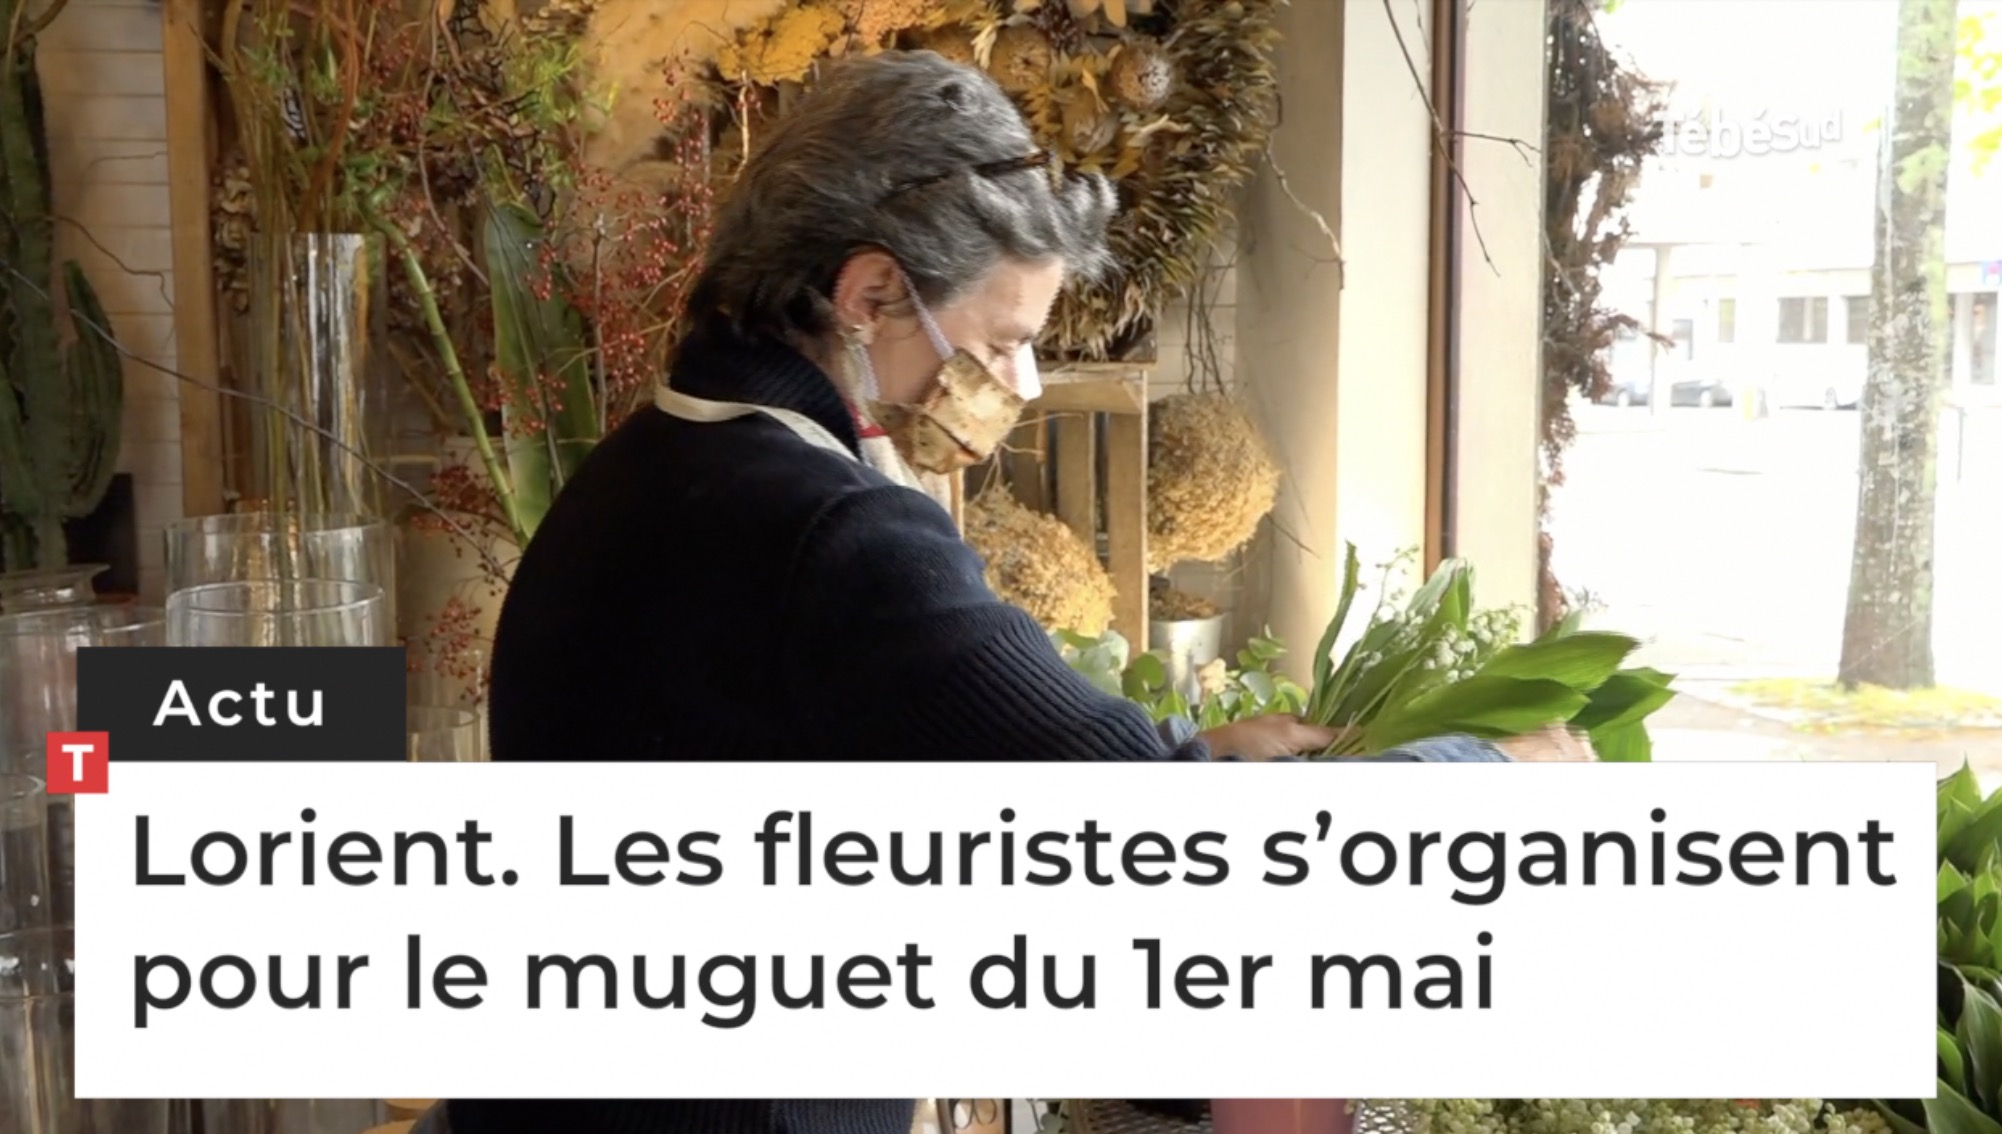 Lorient. Les fleuristes s’organisent pour le muguet du 1er mai (Le Télégramme)